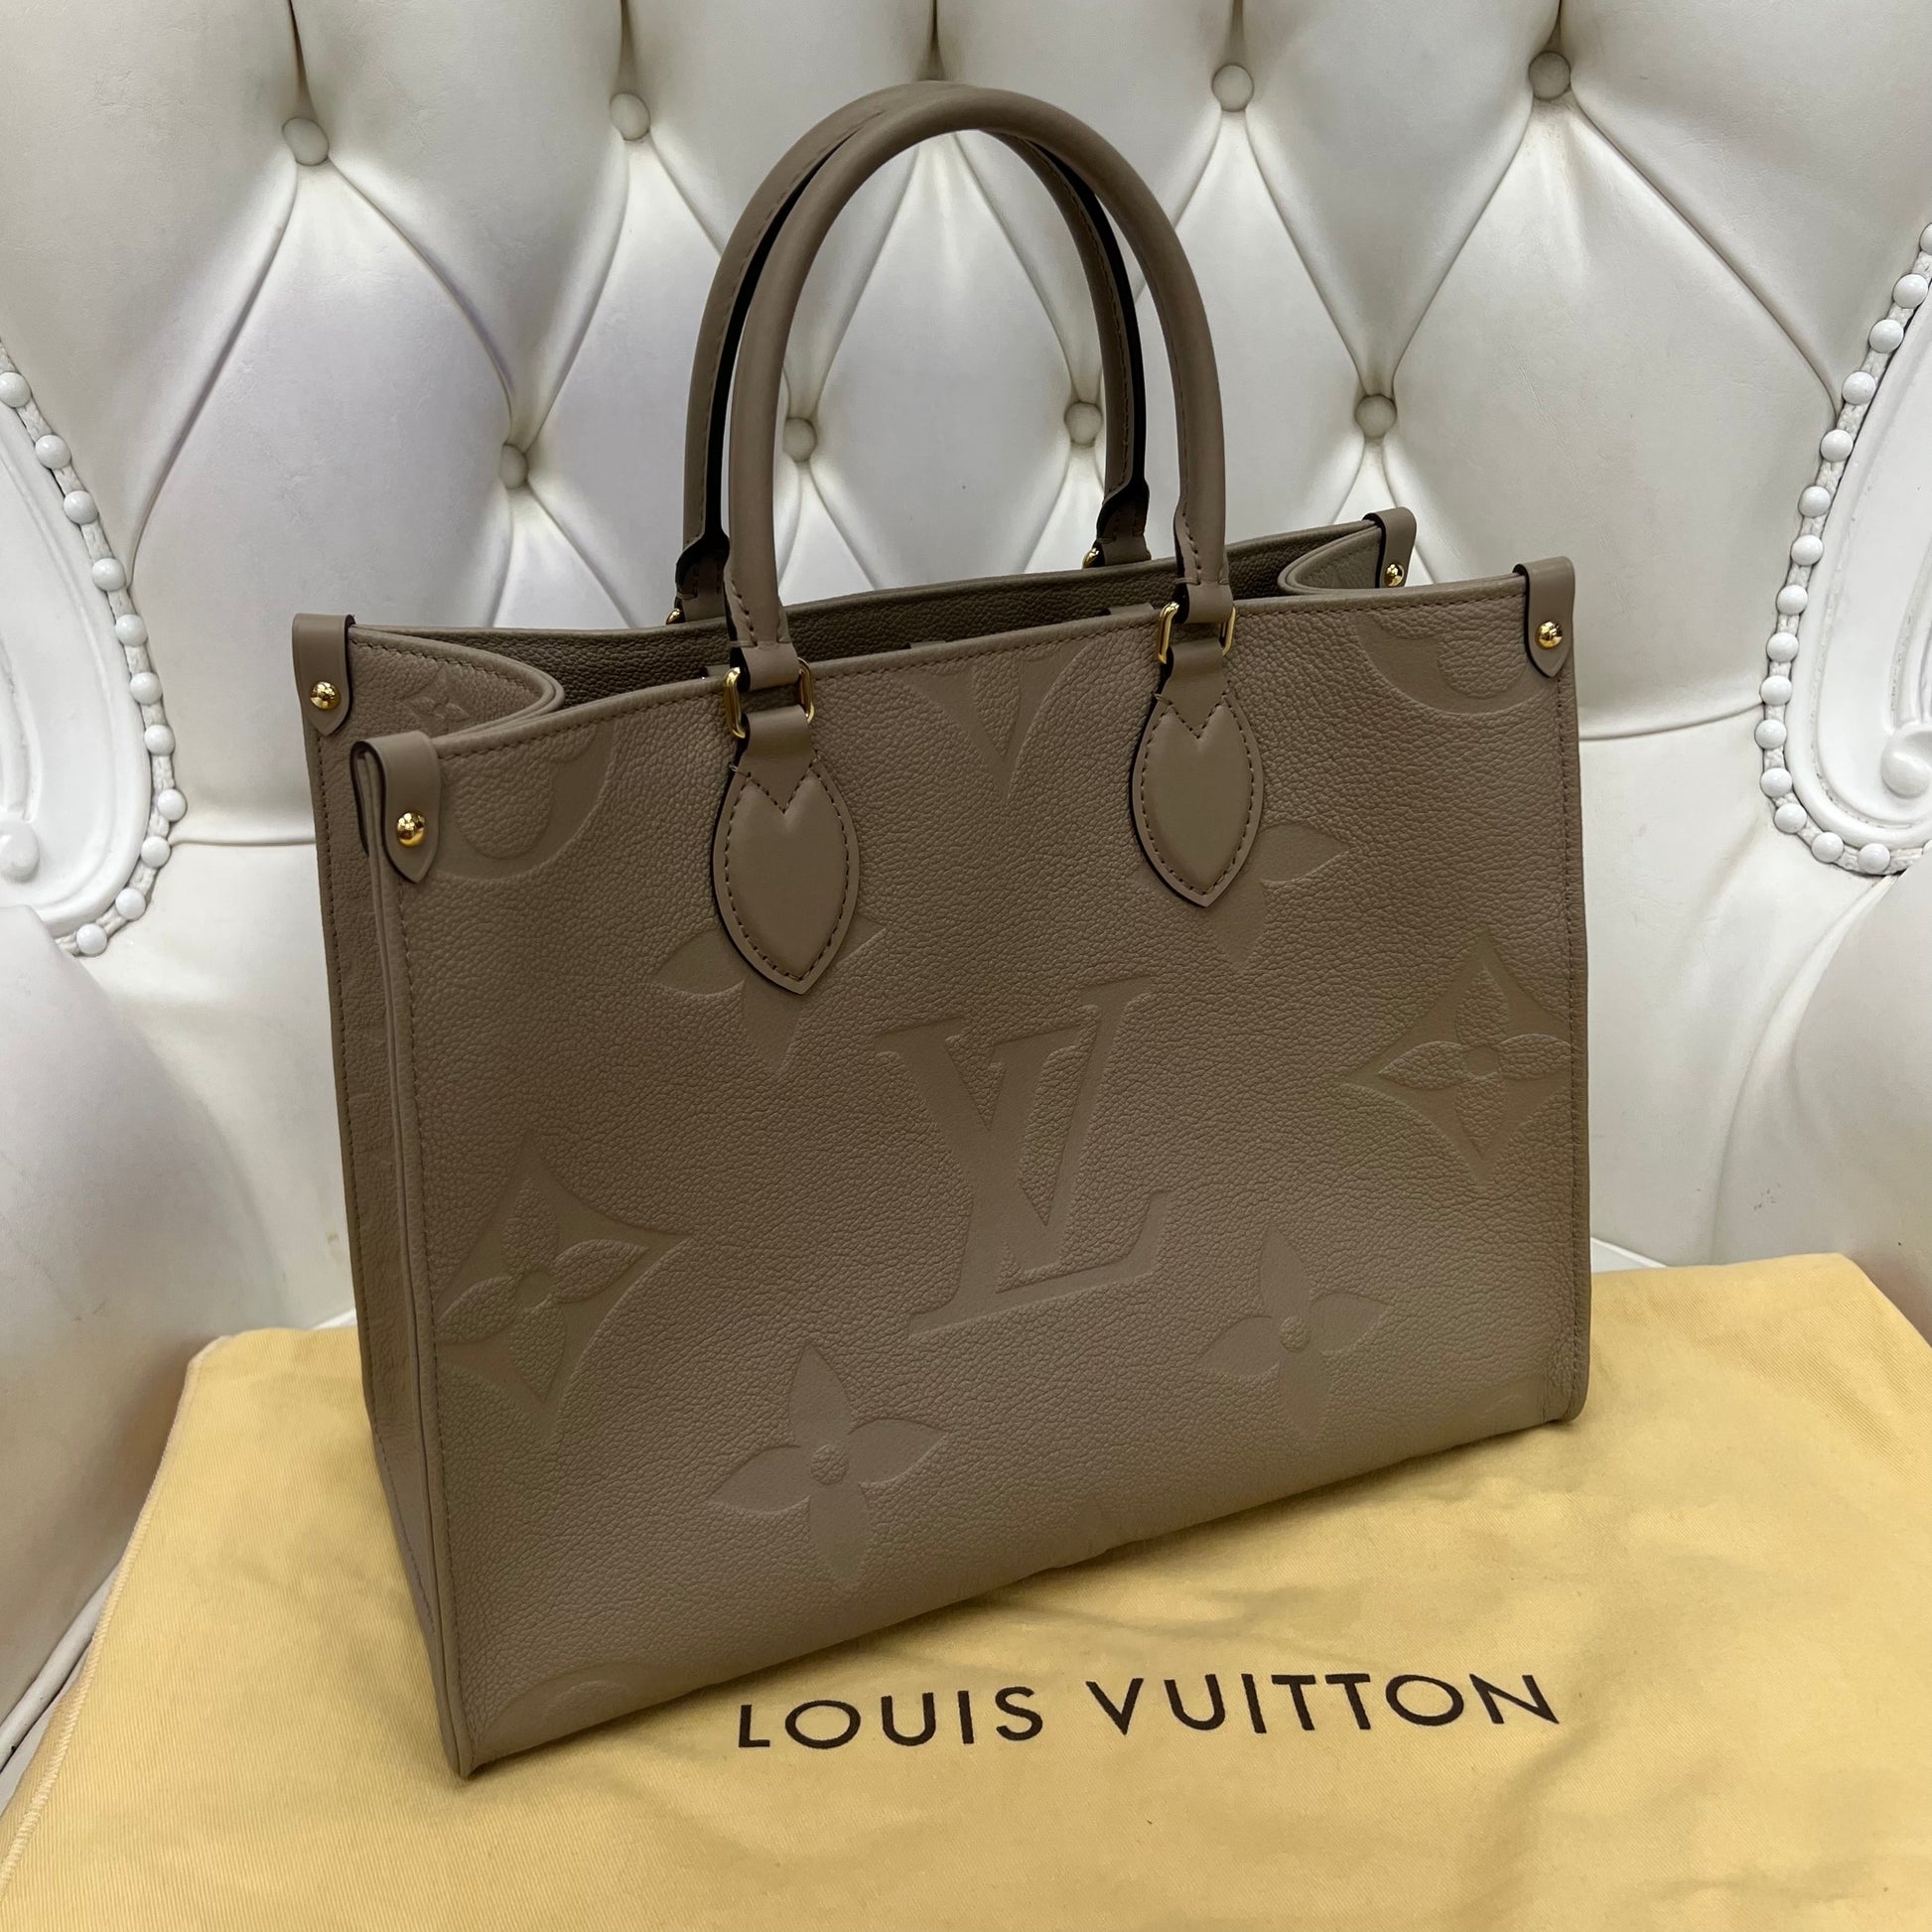 Louis Vuitton OnTheGo PM, Turtle Dove Grey Empreinte Leather, New